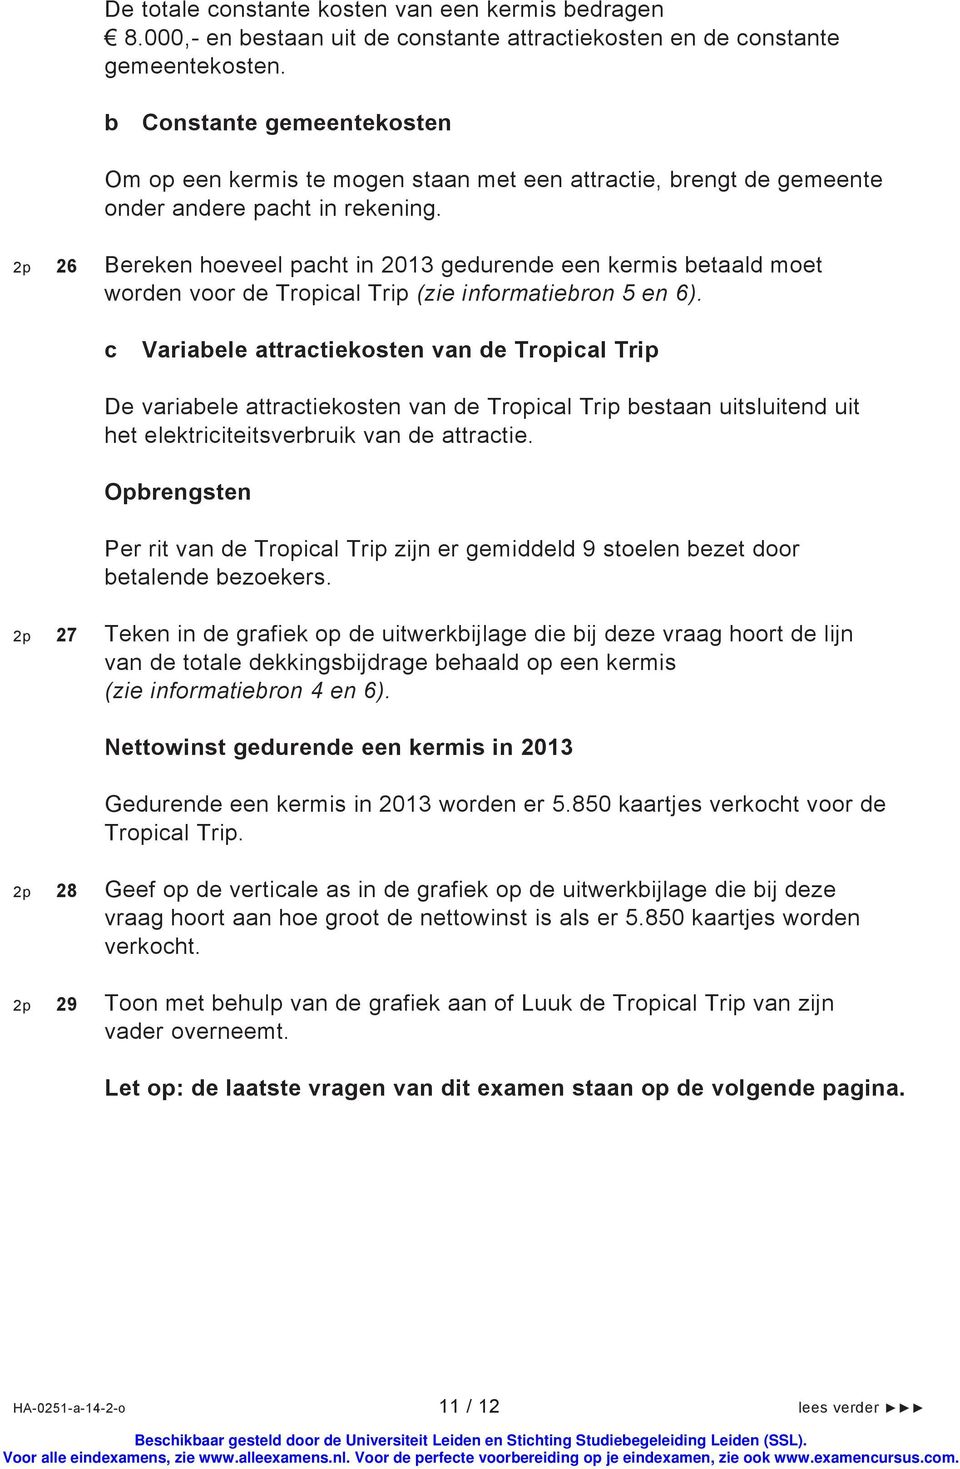 2p 26 Bereken hoeveel pacht in 2013 gedurende een kermis betaald moet worden voor de Tropical Trip (zie informatiebron 5 en 6).